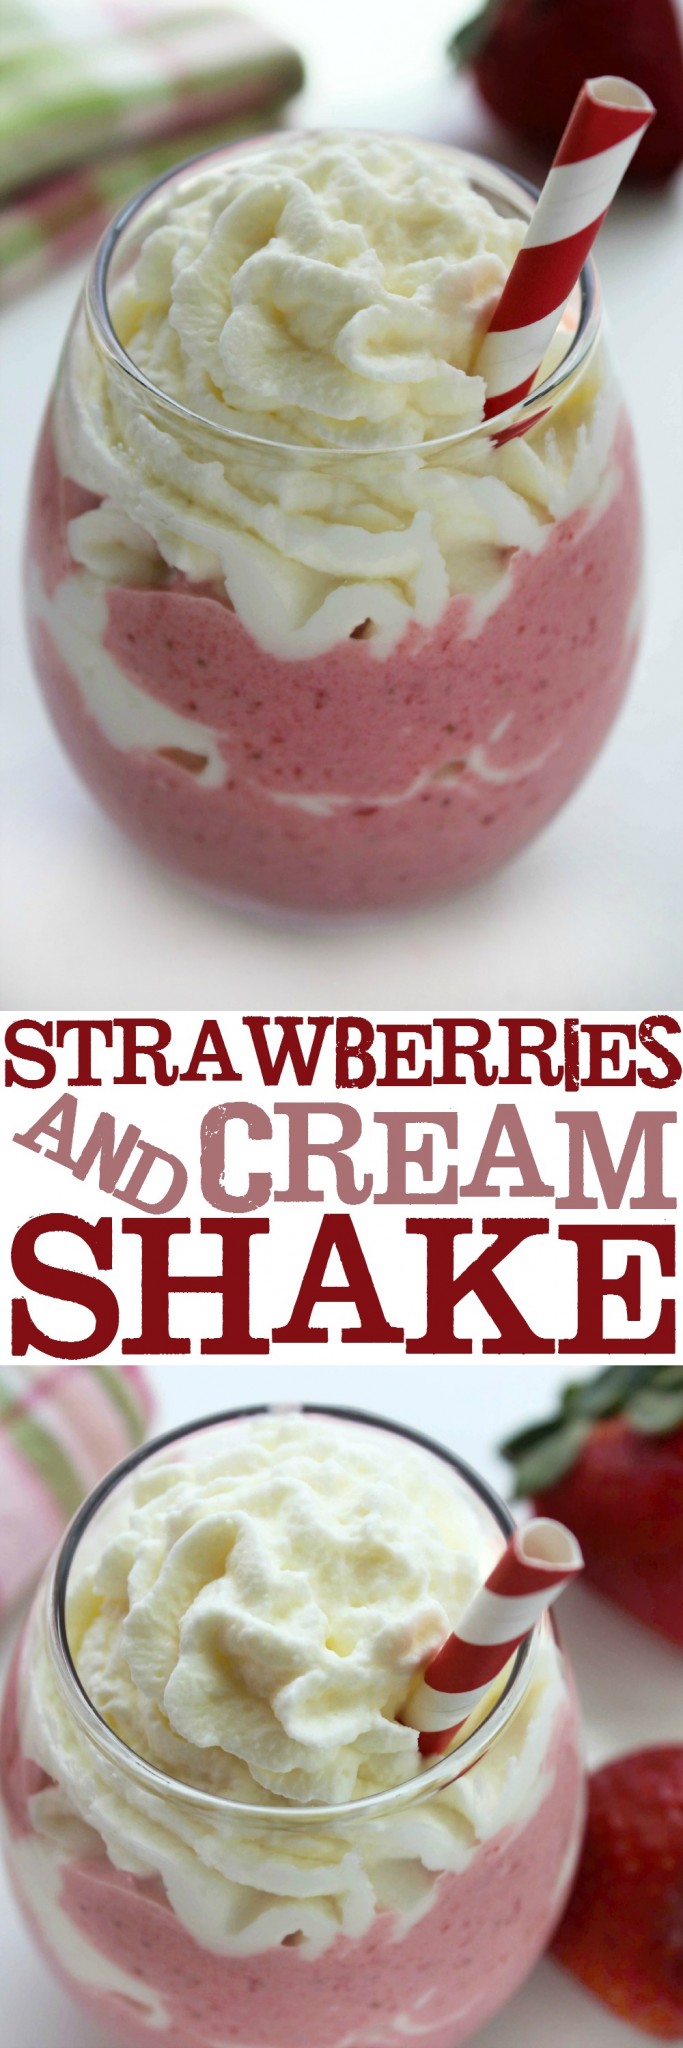 Strawberries and Cream Shake